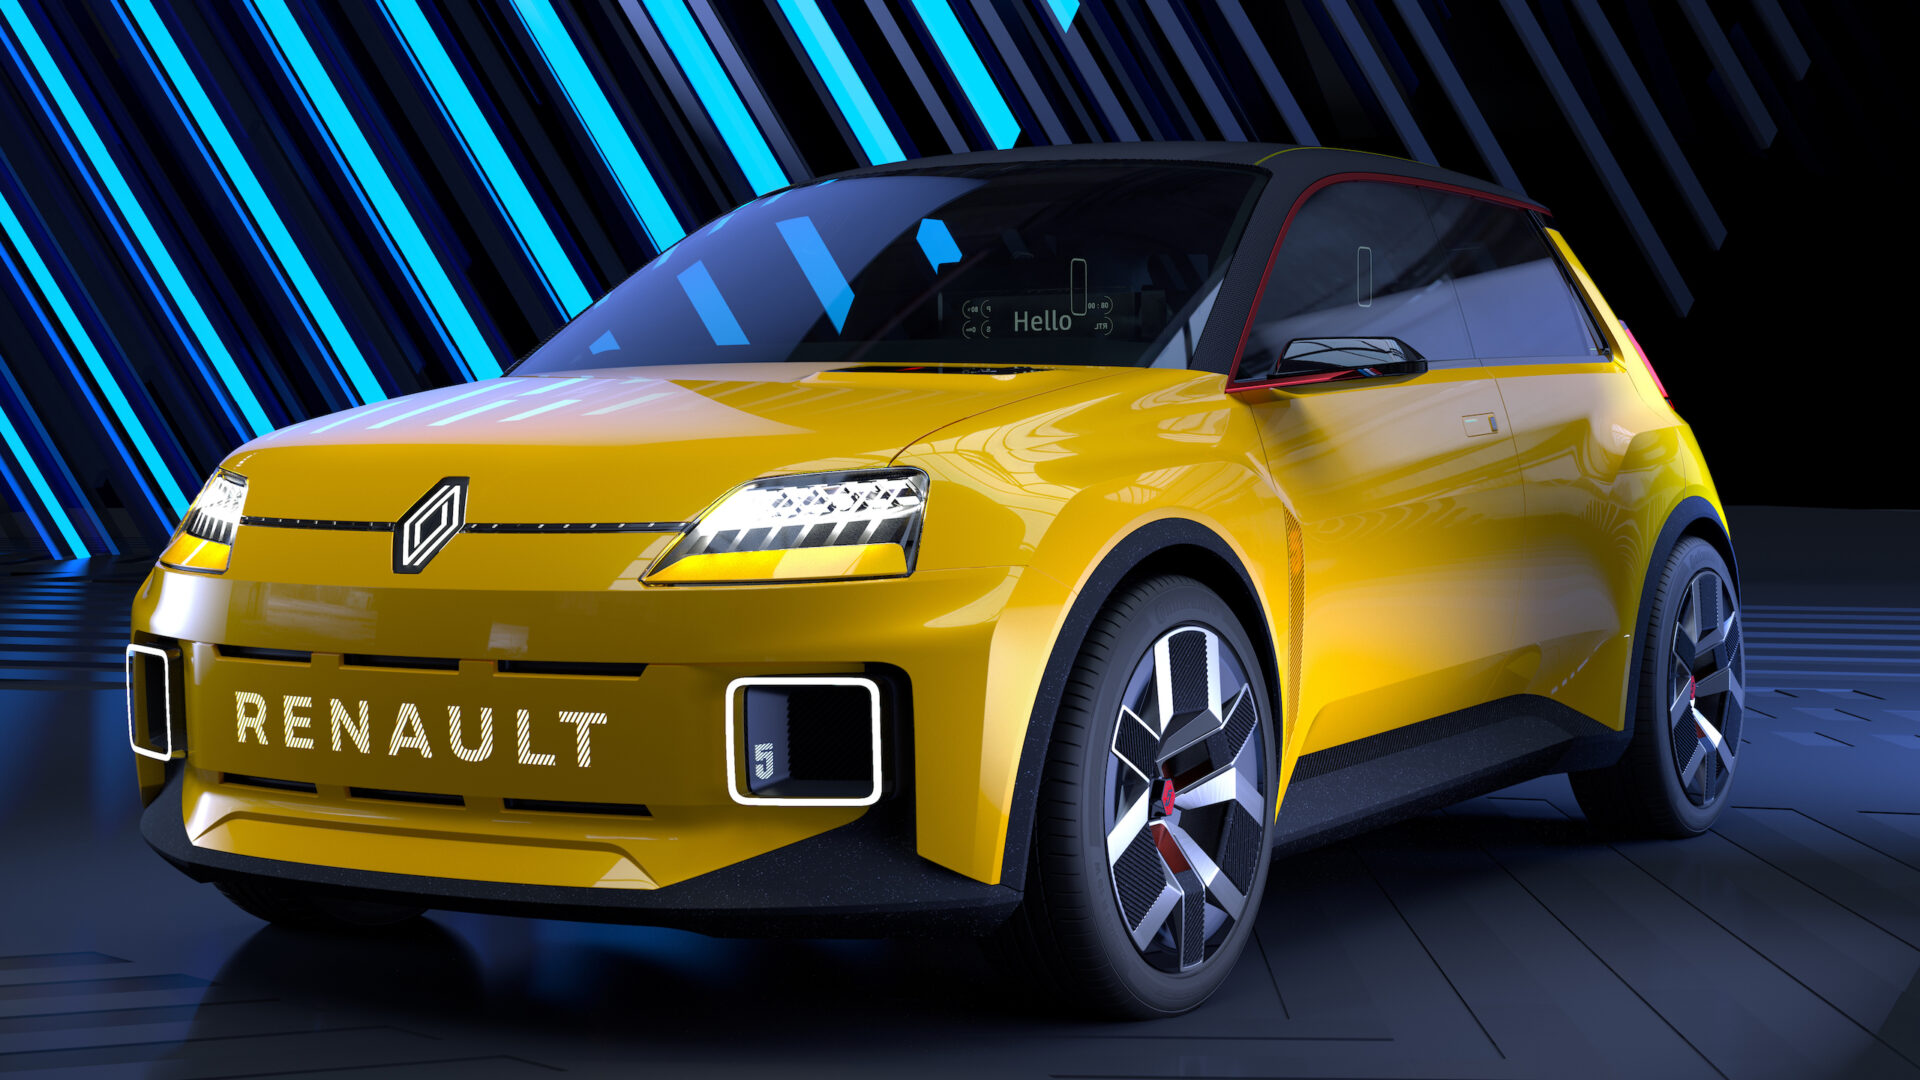 Mer info om Renault 5 nu när premiären närmar sig